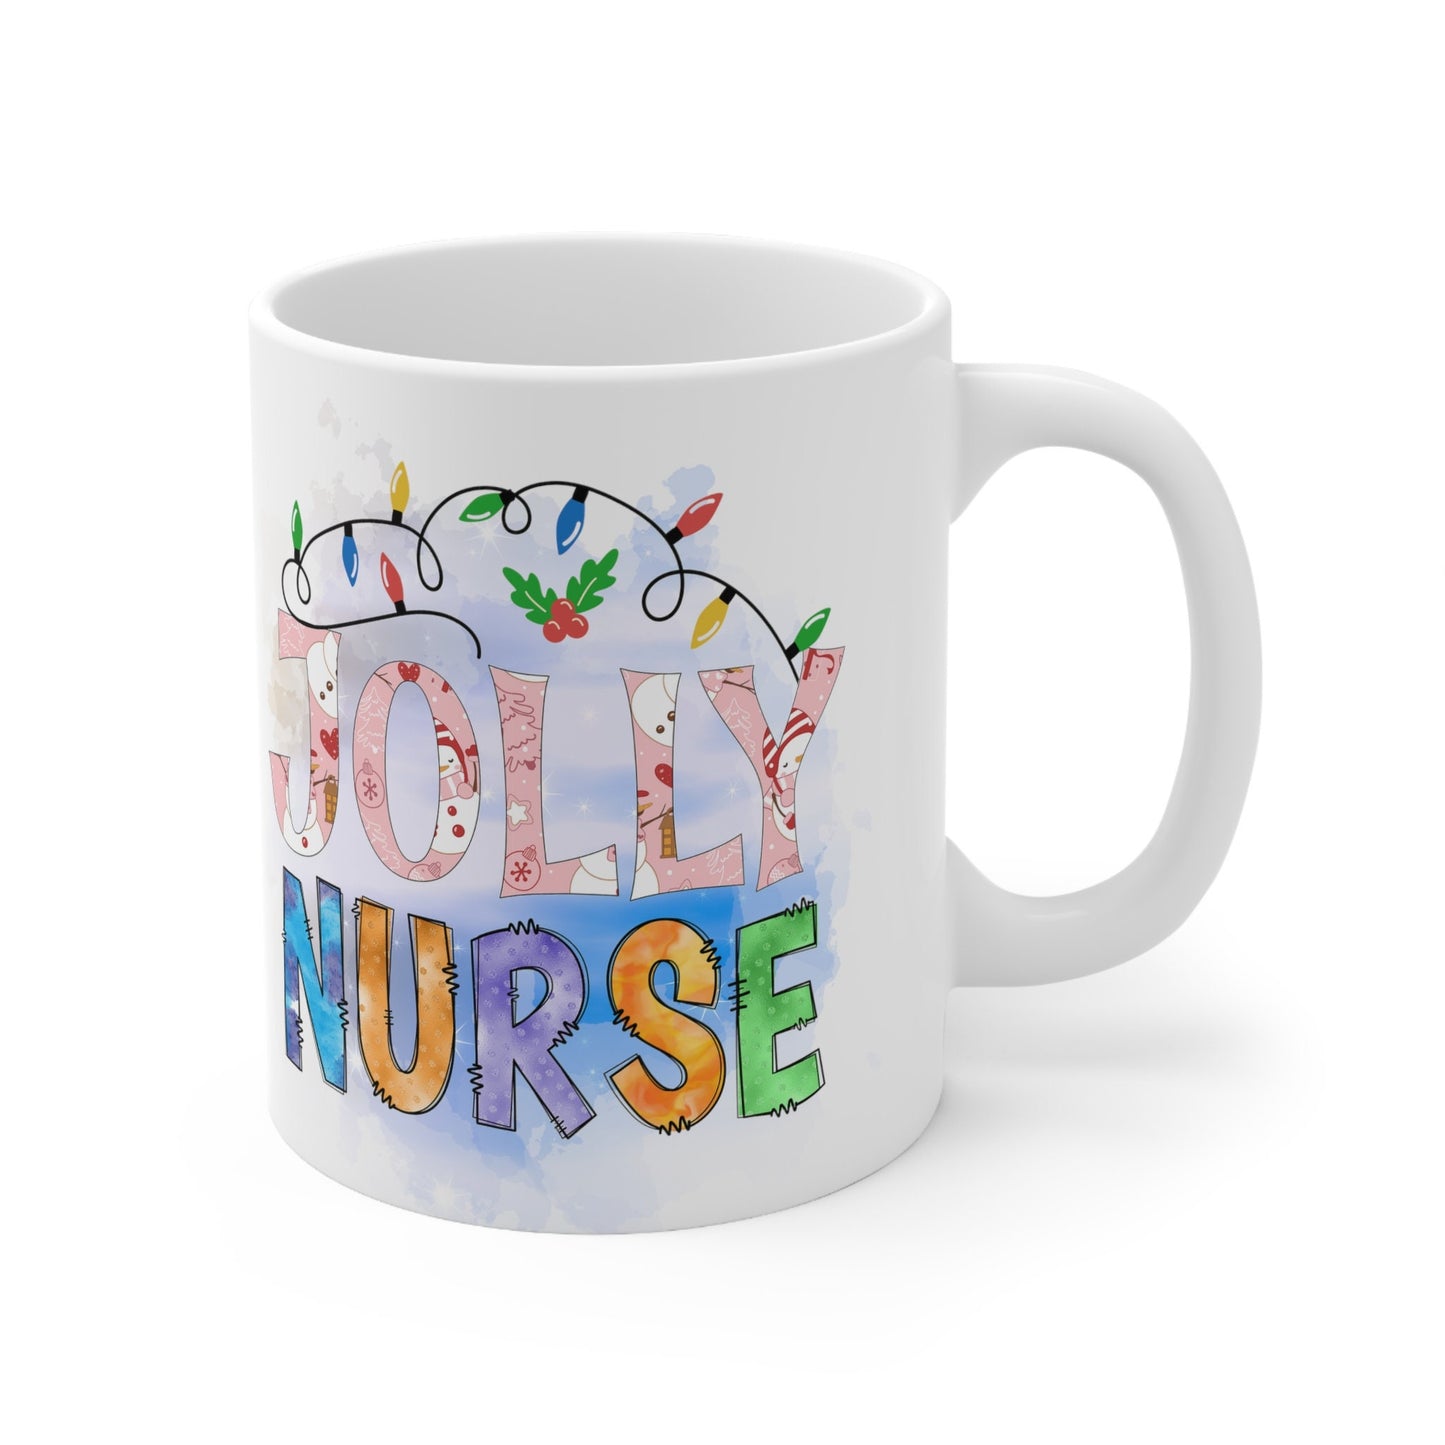 Jolly Nurse Christmas Mug, Perfect Holiday Cheer Coffee Mug, Gift Mug for Christmas Spirit, Cute X-Mas mug for Family and friends